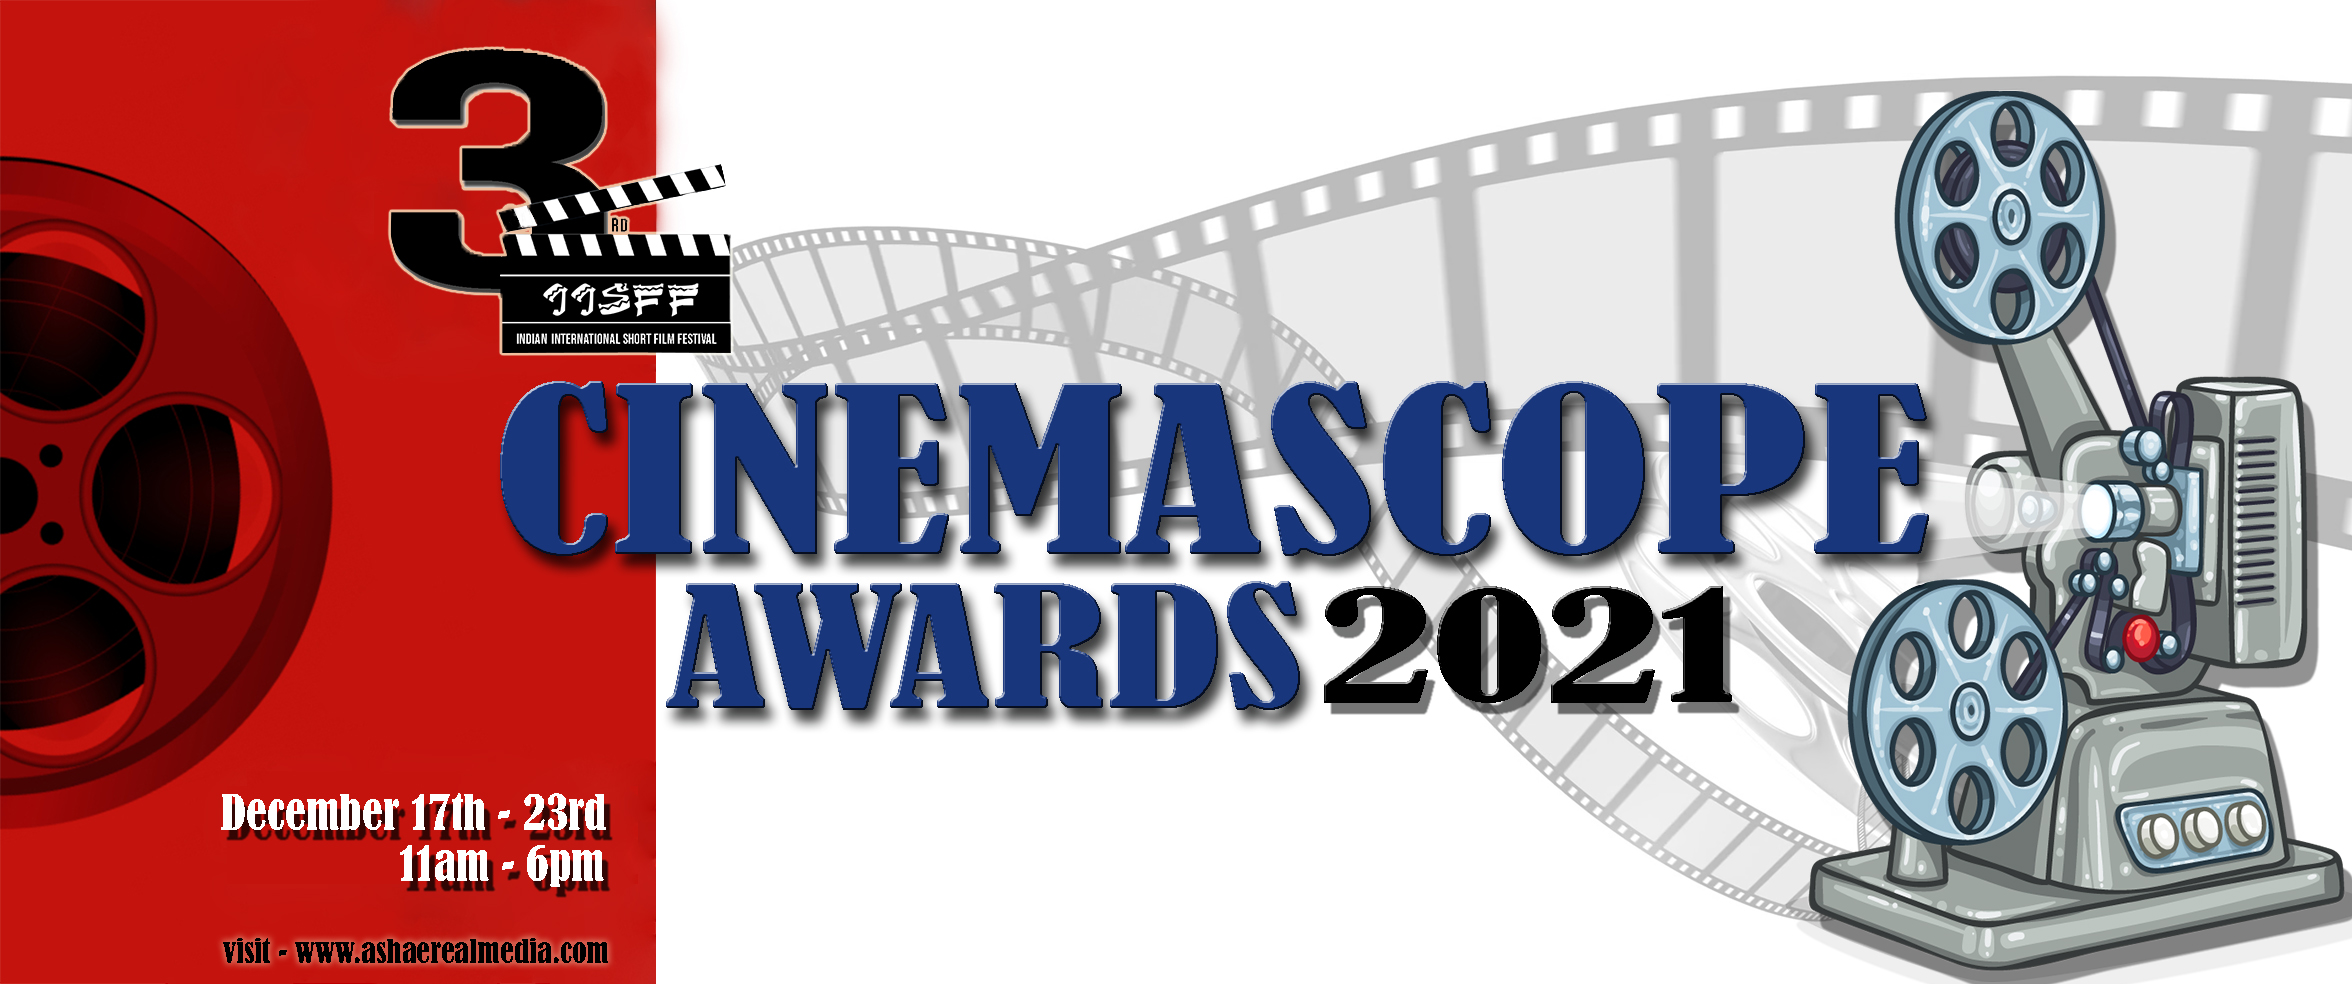 IISFF CINEMASCOPE AWARDS 2021 Coming Soon